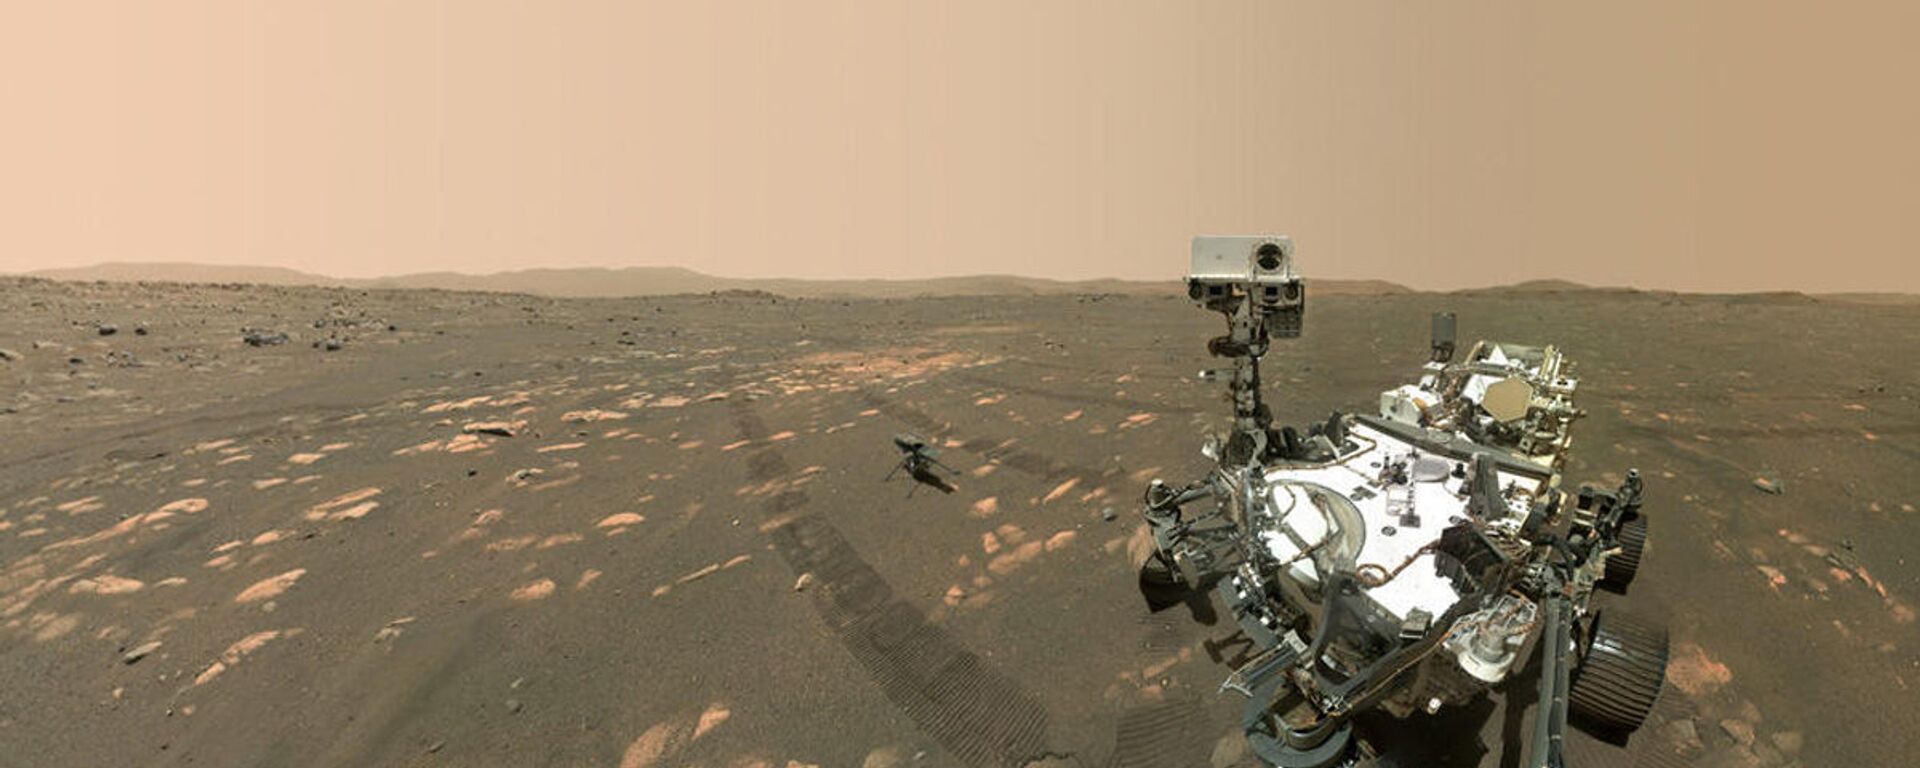 المركبة المتجولة بيرسيفرانس مارس، التابعة لوكالة الفضاء الدولية ناسا، تلتقط صورة سيلفي مع أول طائرة حوامة إنجينيويتي على سطح المريخ، أبريل 2021 - سبوتنيك عربي, 1920, 28.05.2021